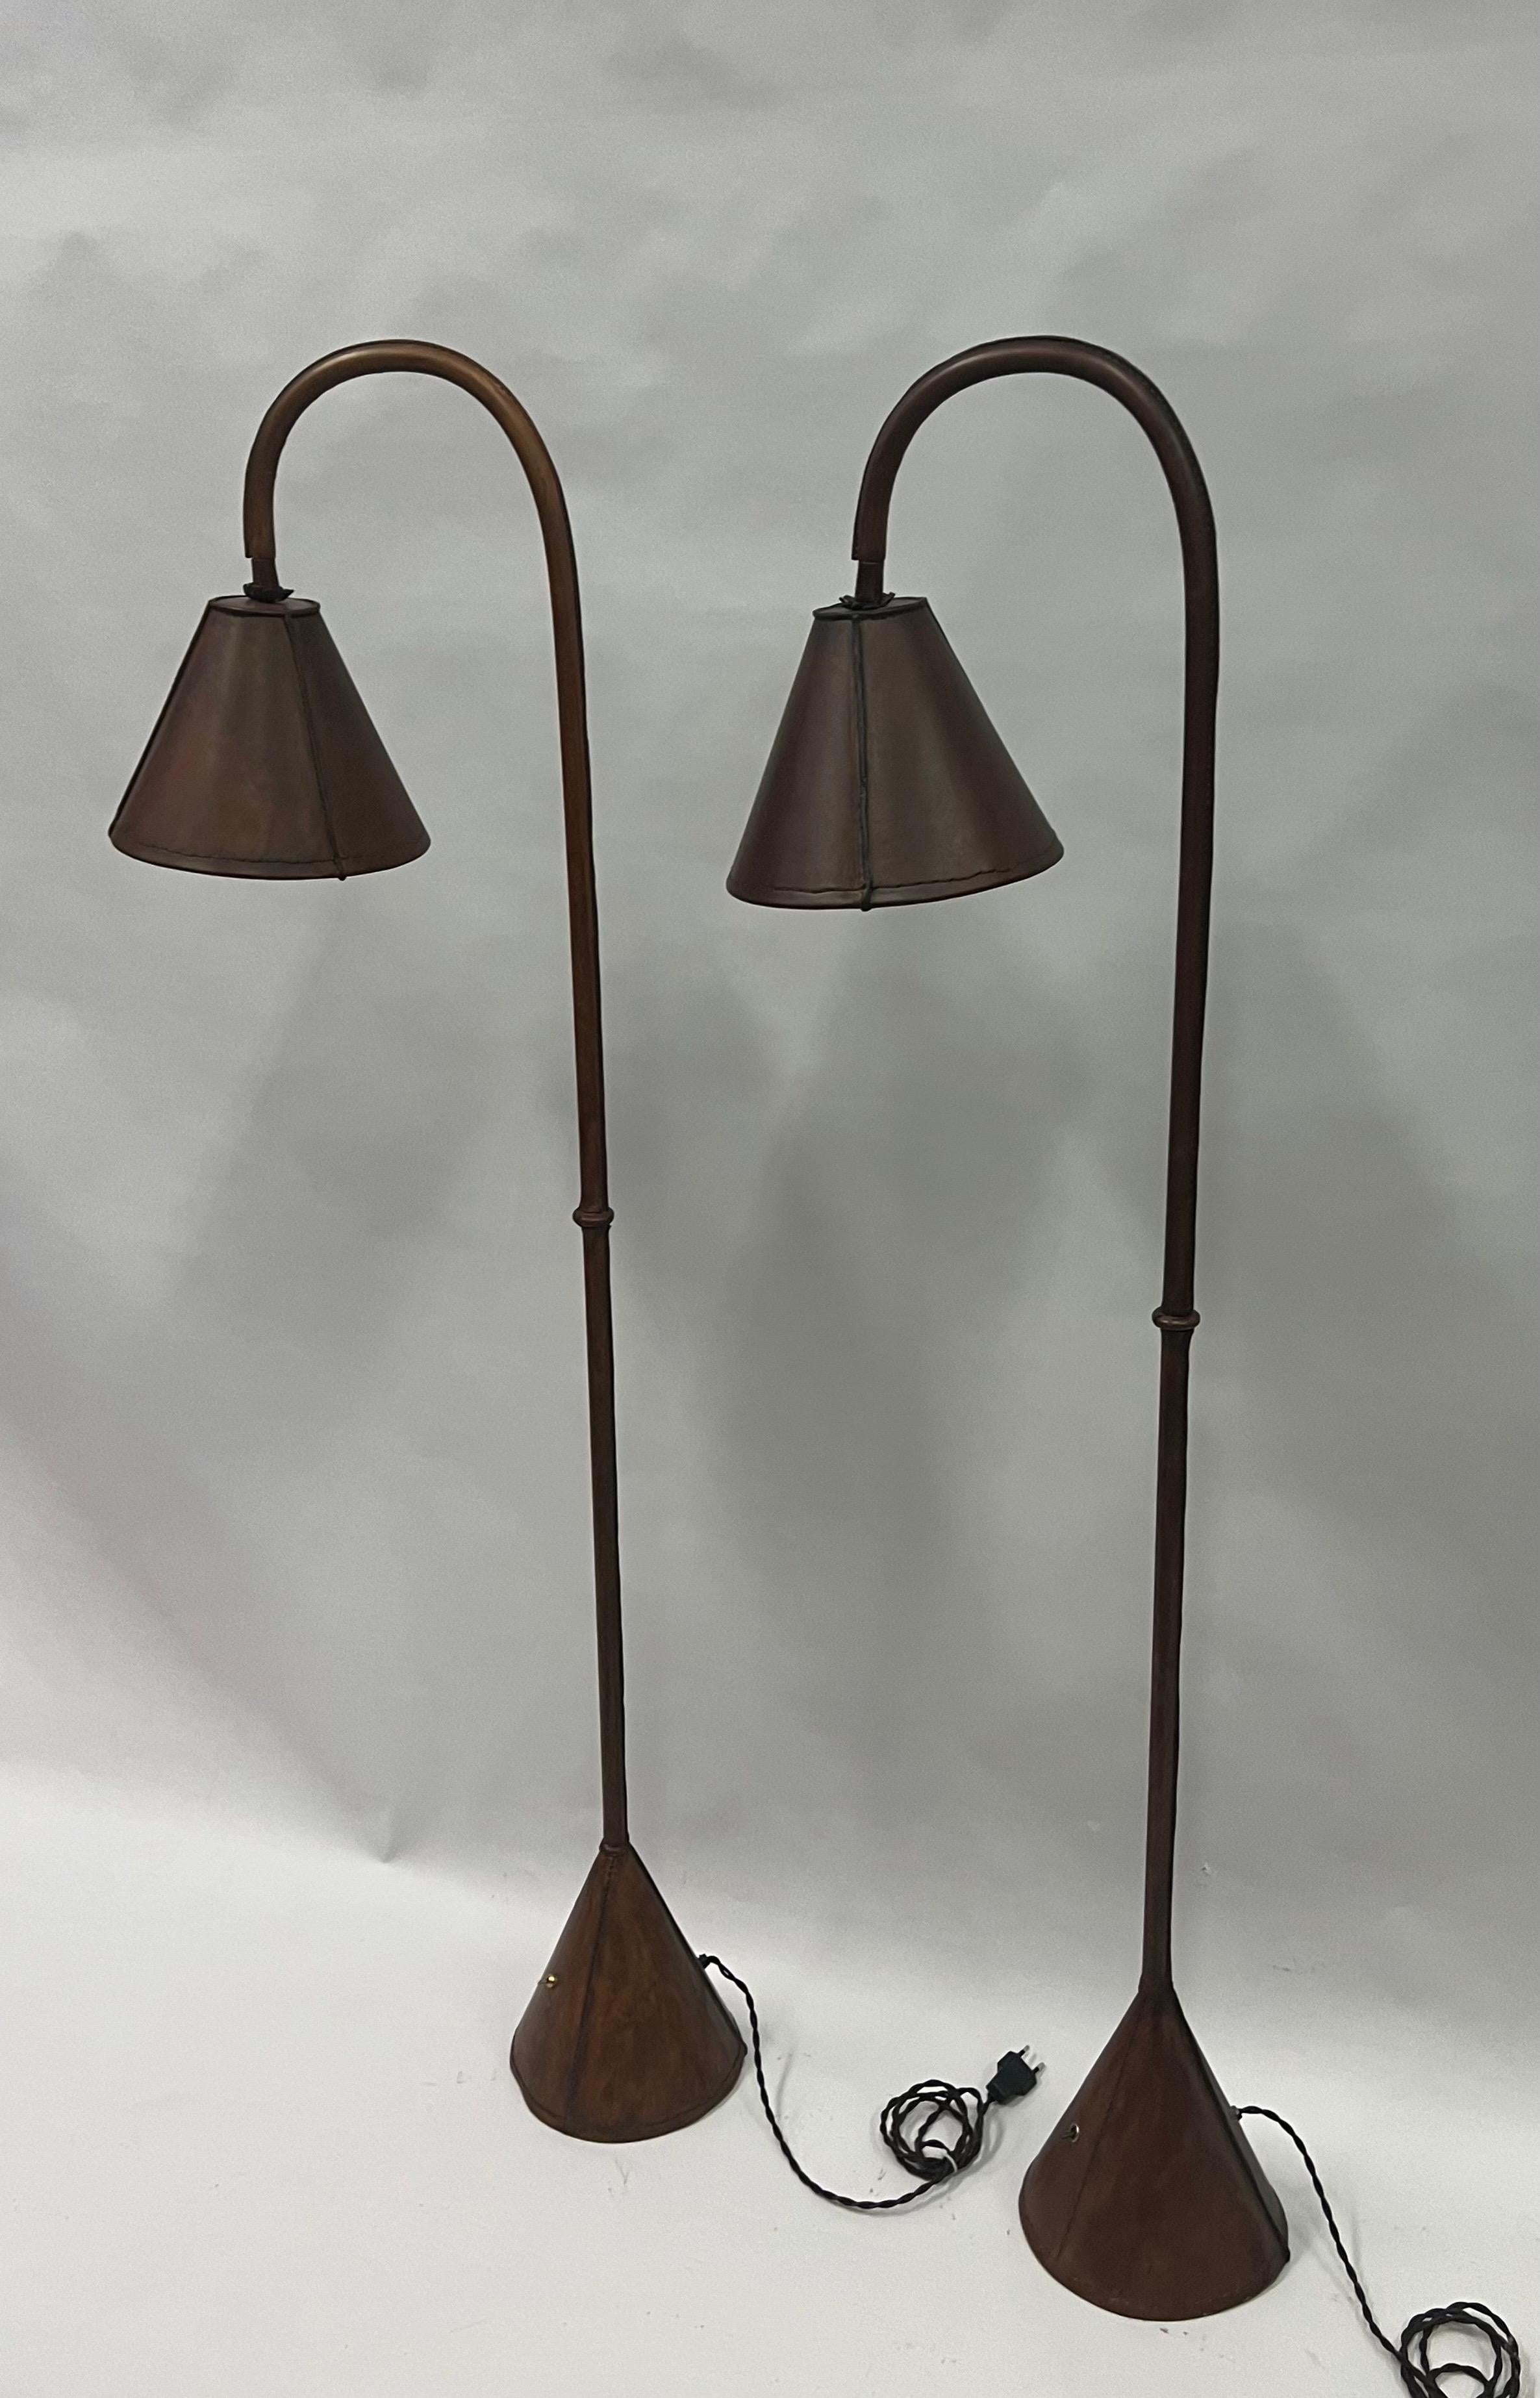 Paire élégante et intemporelle de lampadaires en cuir marron foncé cousus à la main par Jacques Adnet vers 1950. Ce modèle classique fabriqué à la main par le célèbre designer français Jacques Adnet est considéré comme une icône du design et du goût